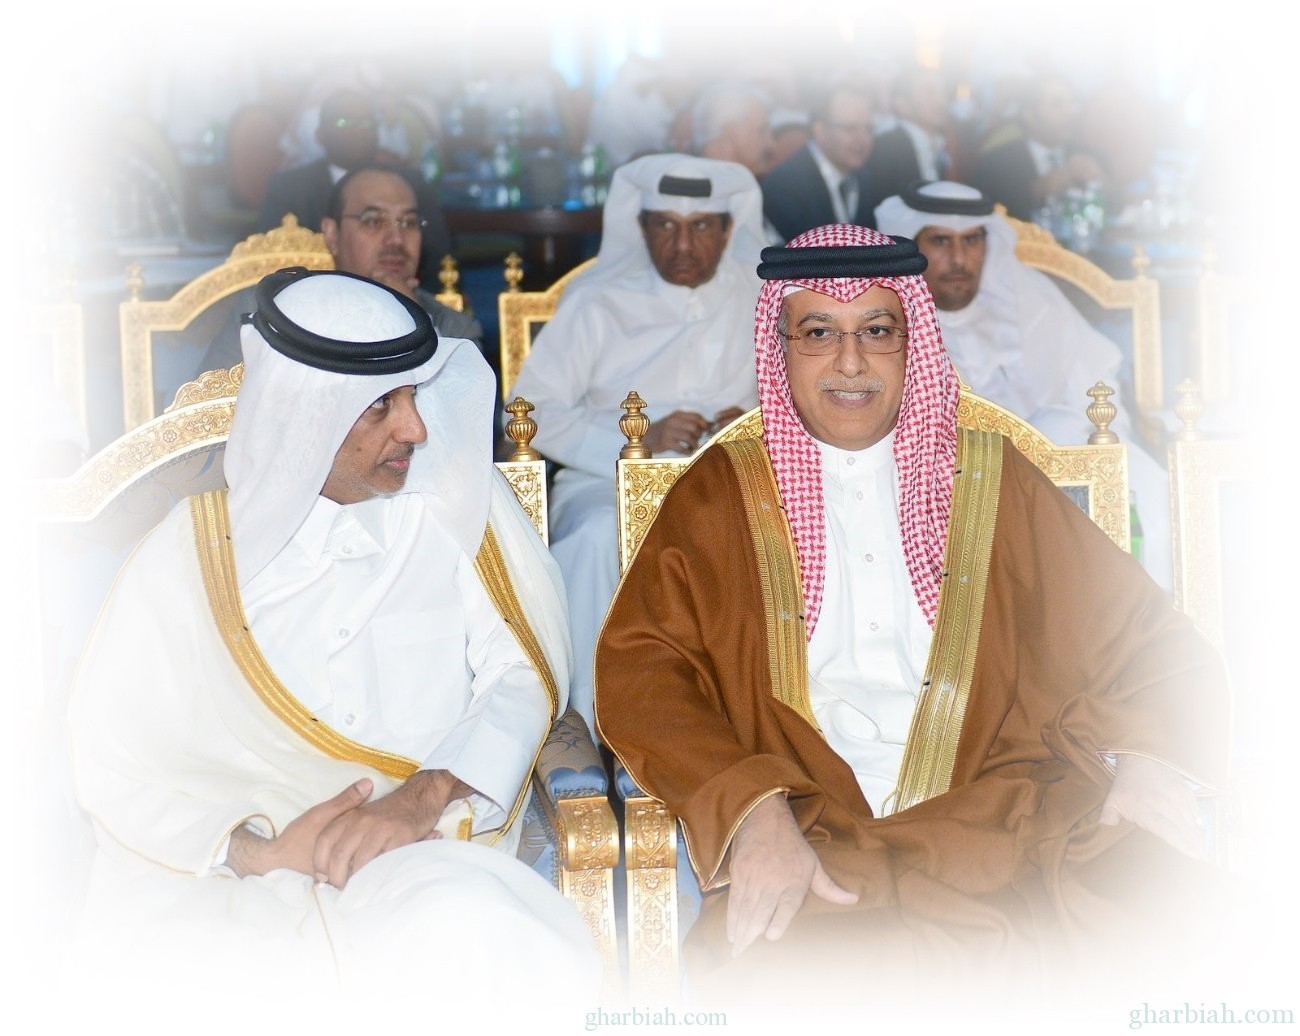  رئيس الاتحاد الآسيوي: دورة كأس الخليج صنعت إرثا رياضيا متميزاً في المنطقة